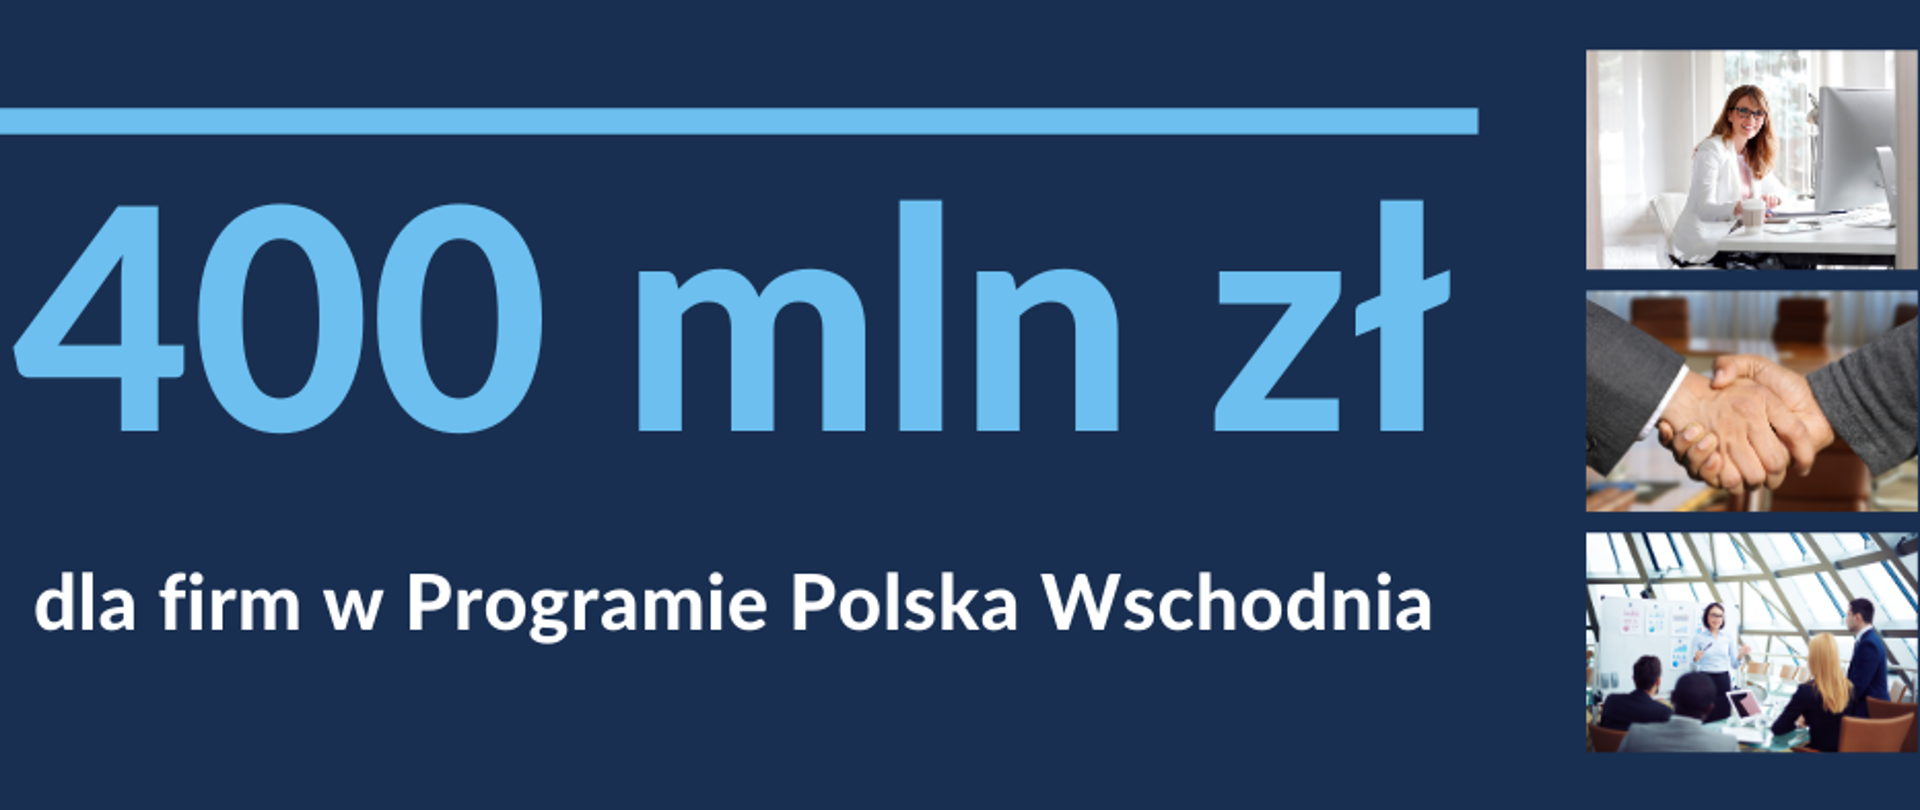 Grafika z napisem 400 mln zł dla firm w Programie Polska Wschodnia